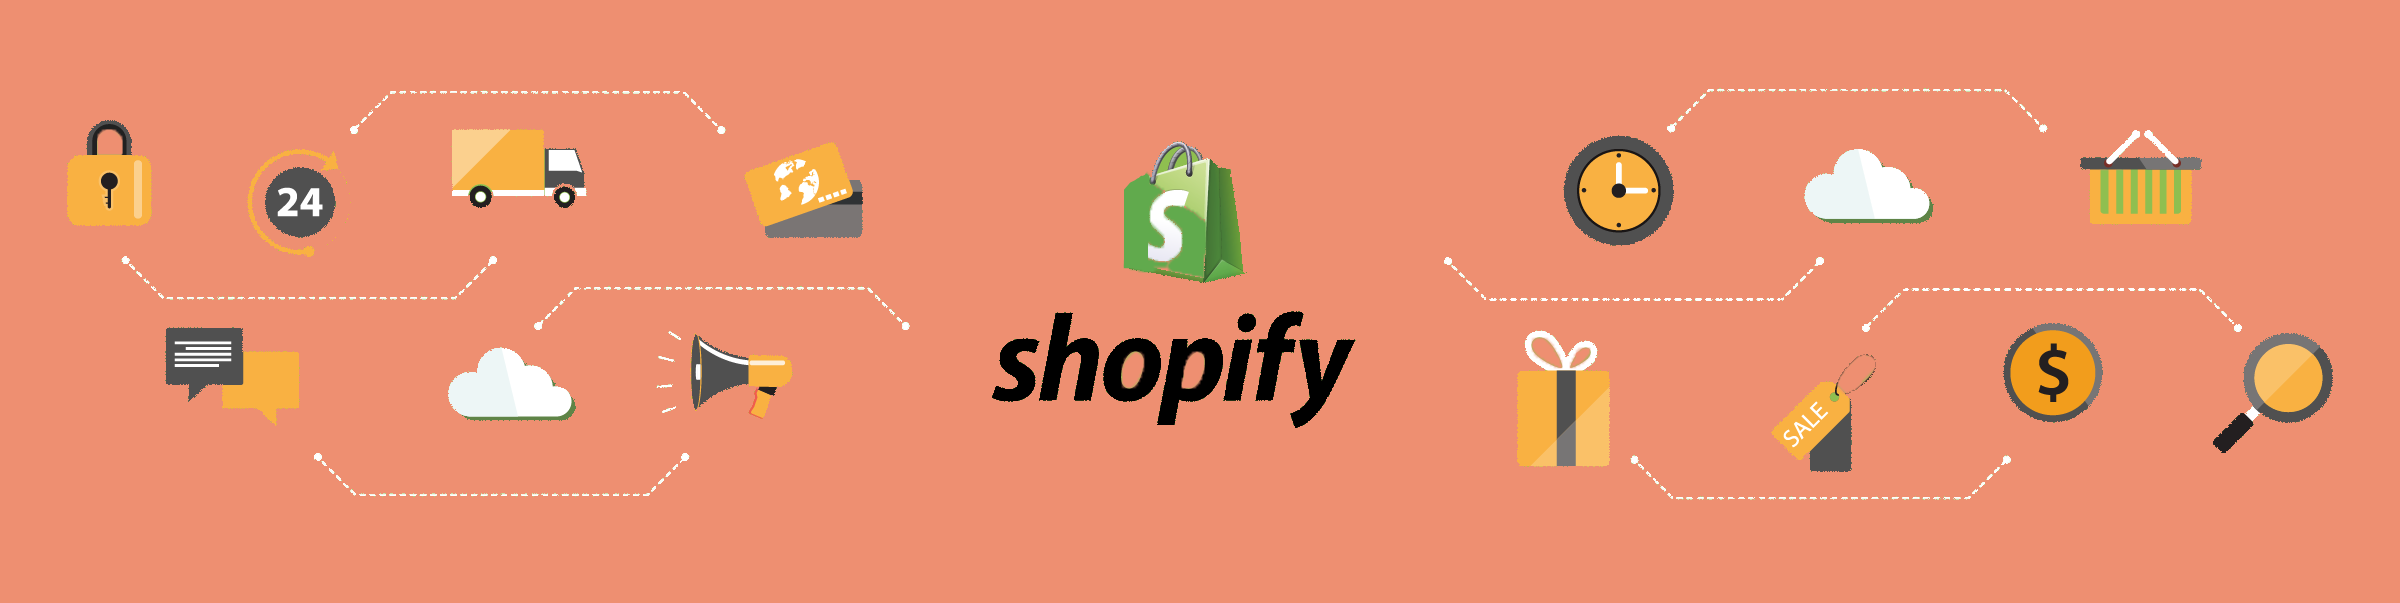 shopify_development_service